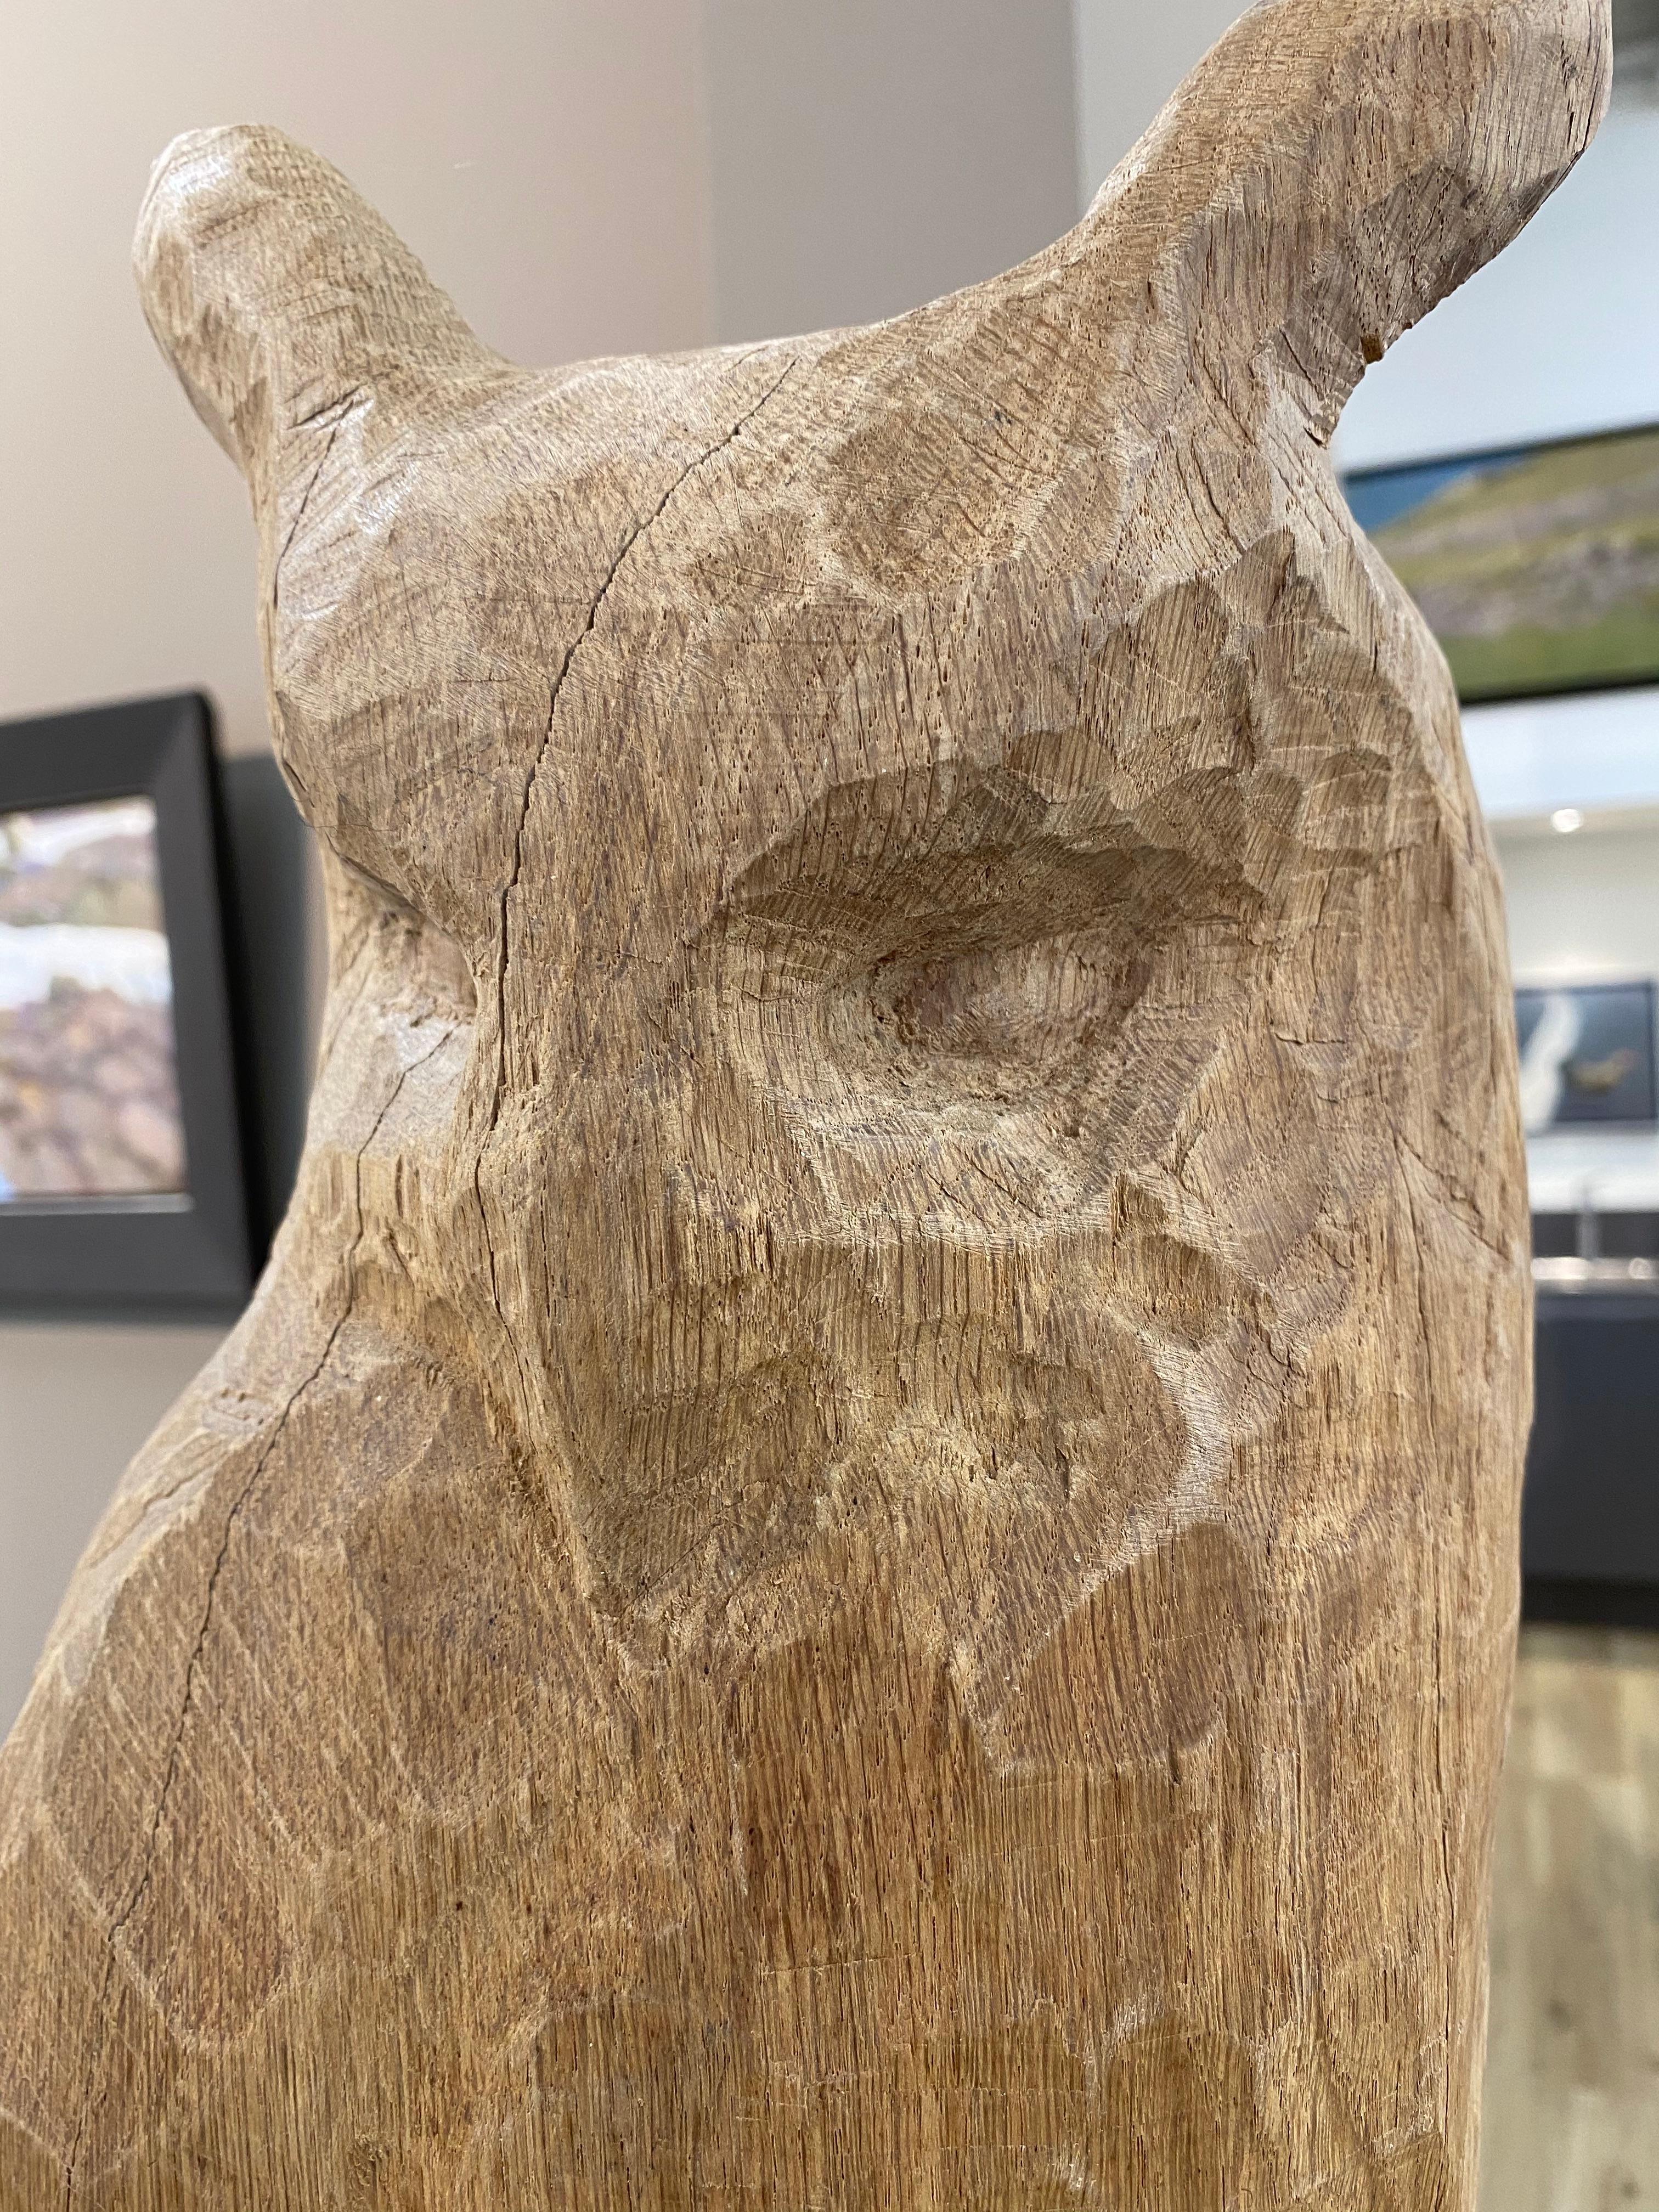 Eagle Owl - 21st Century Sculpture of an Owl made of oak - Brown Abstract Sculpture by Jaap Deelder